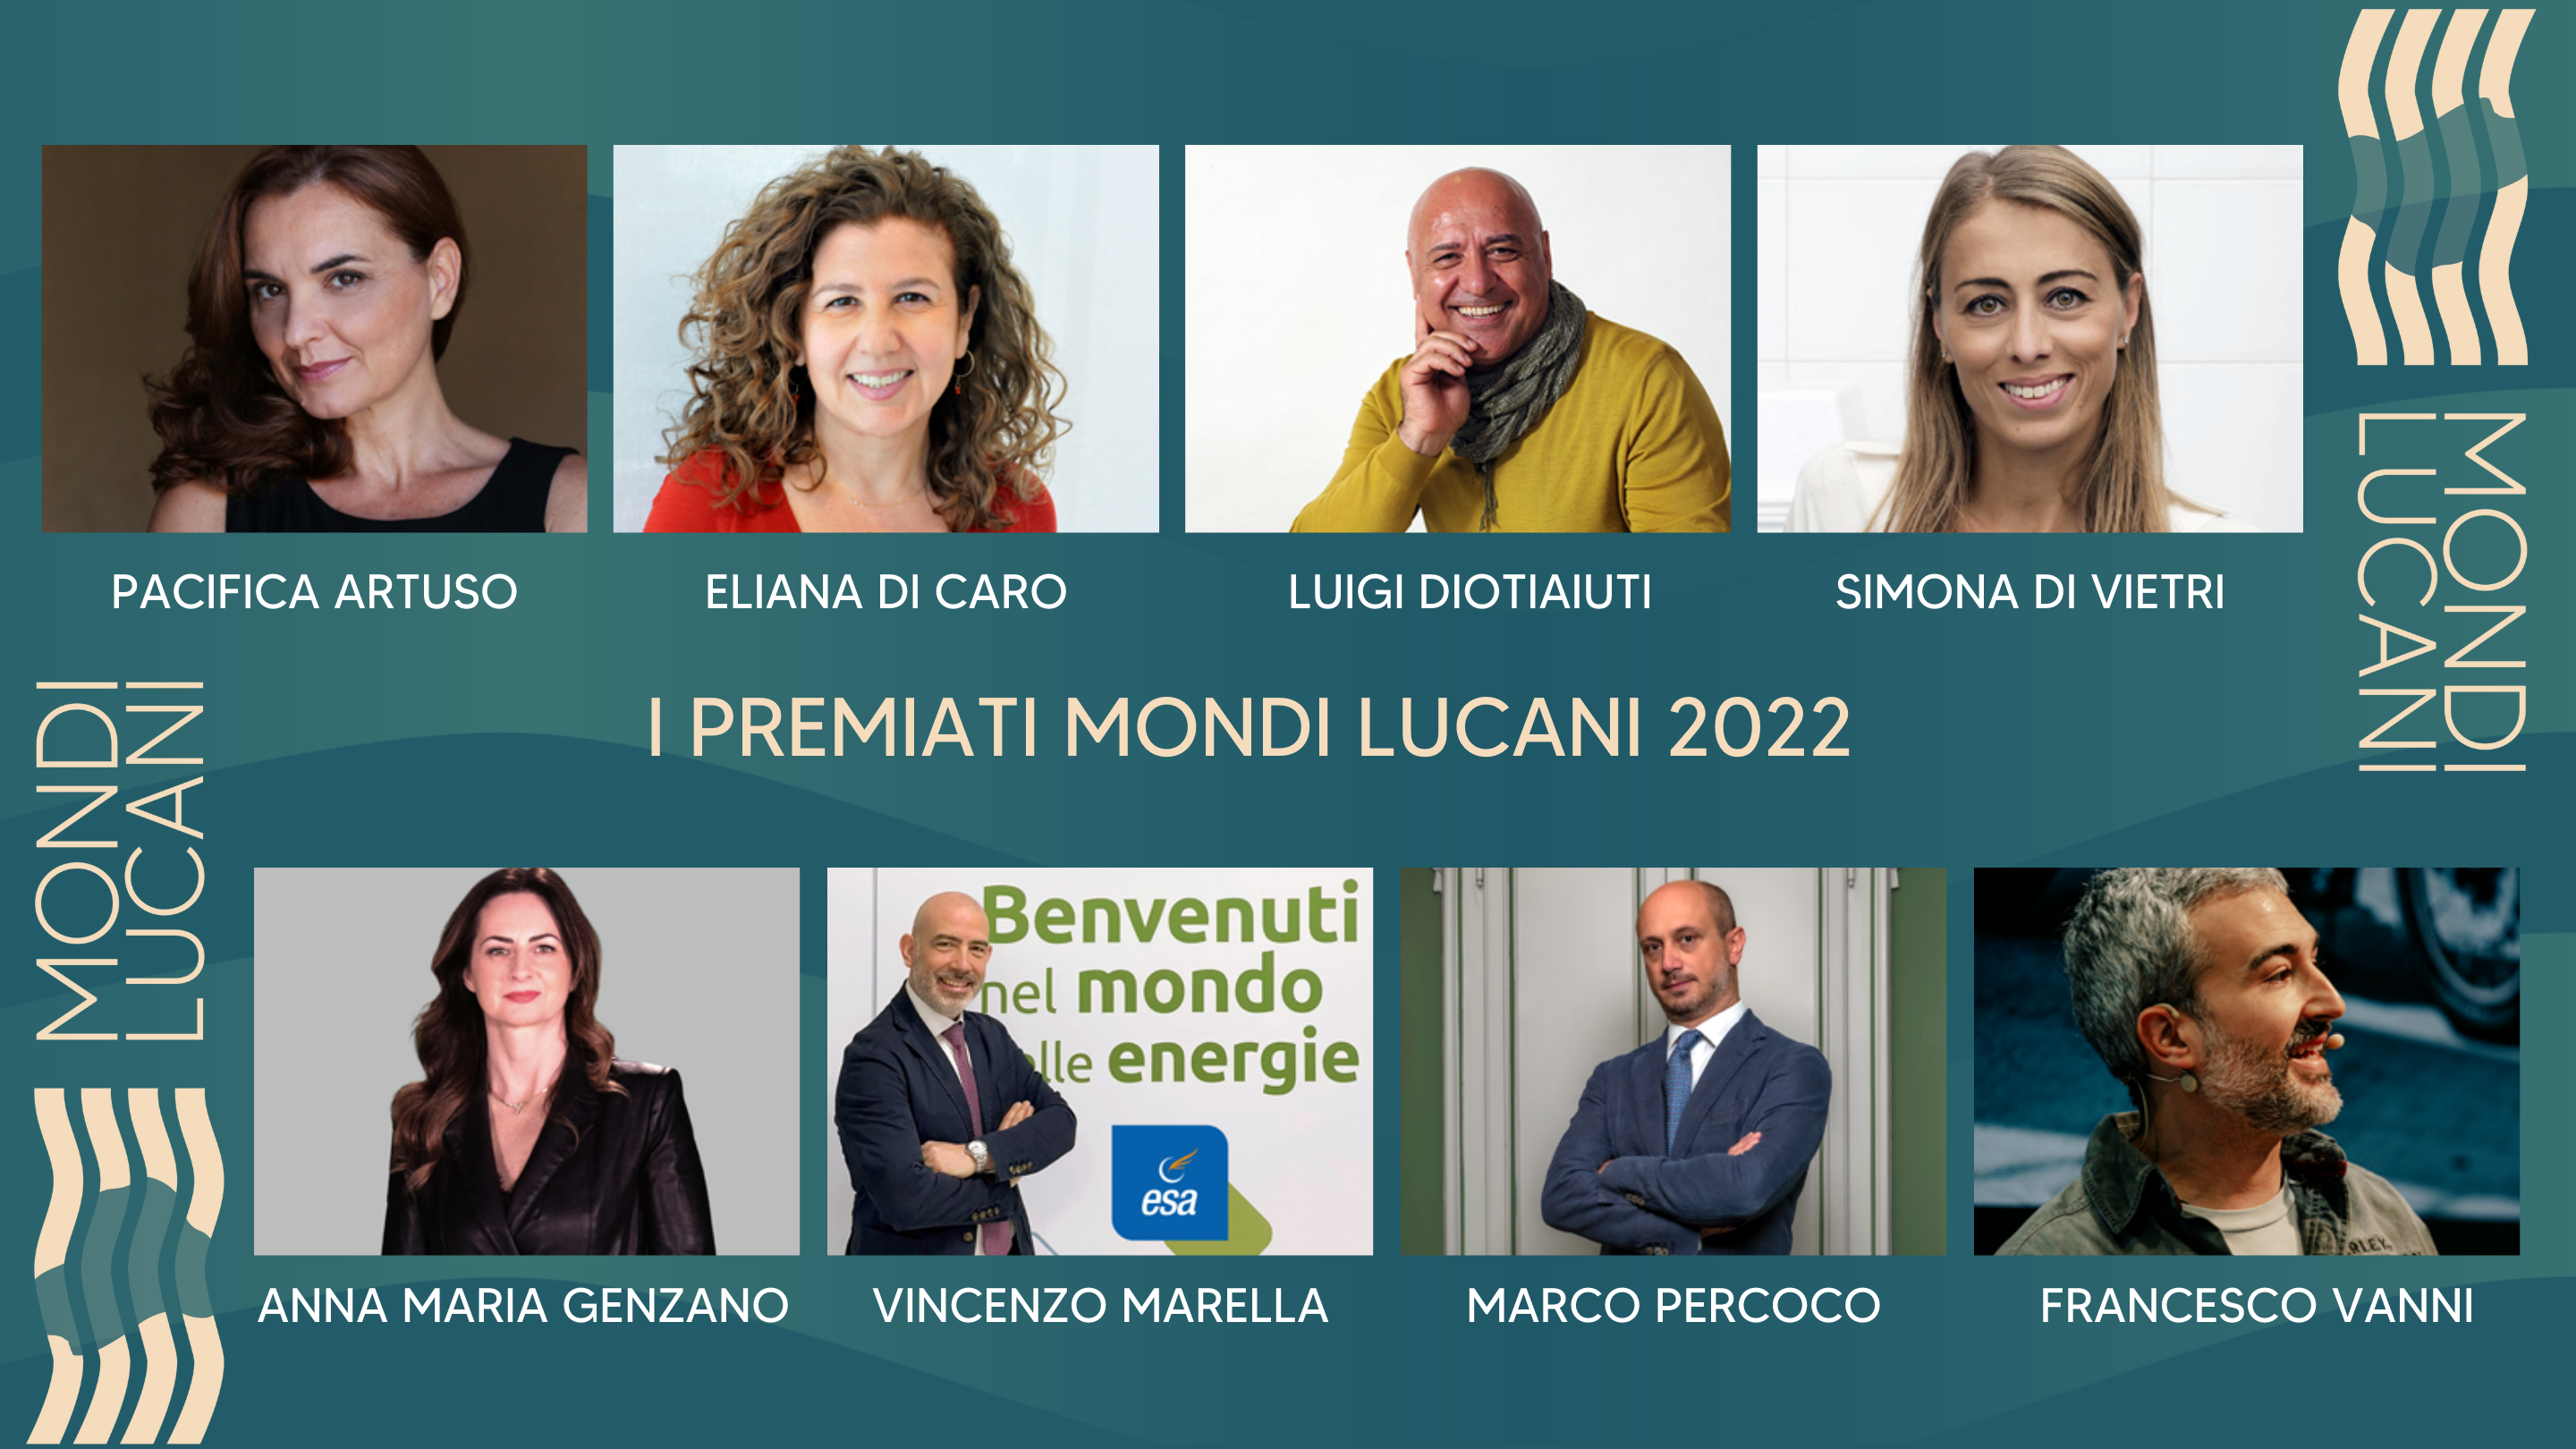 A Matera il Premio Mondi Lucani 2022: ecco i nomi dei premiati